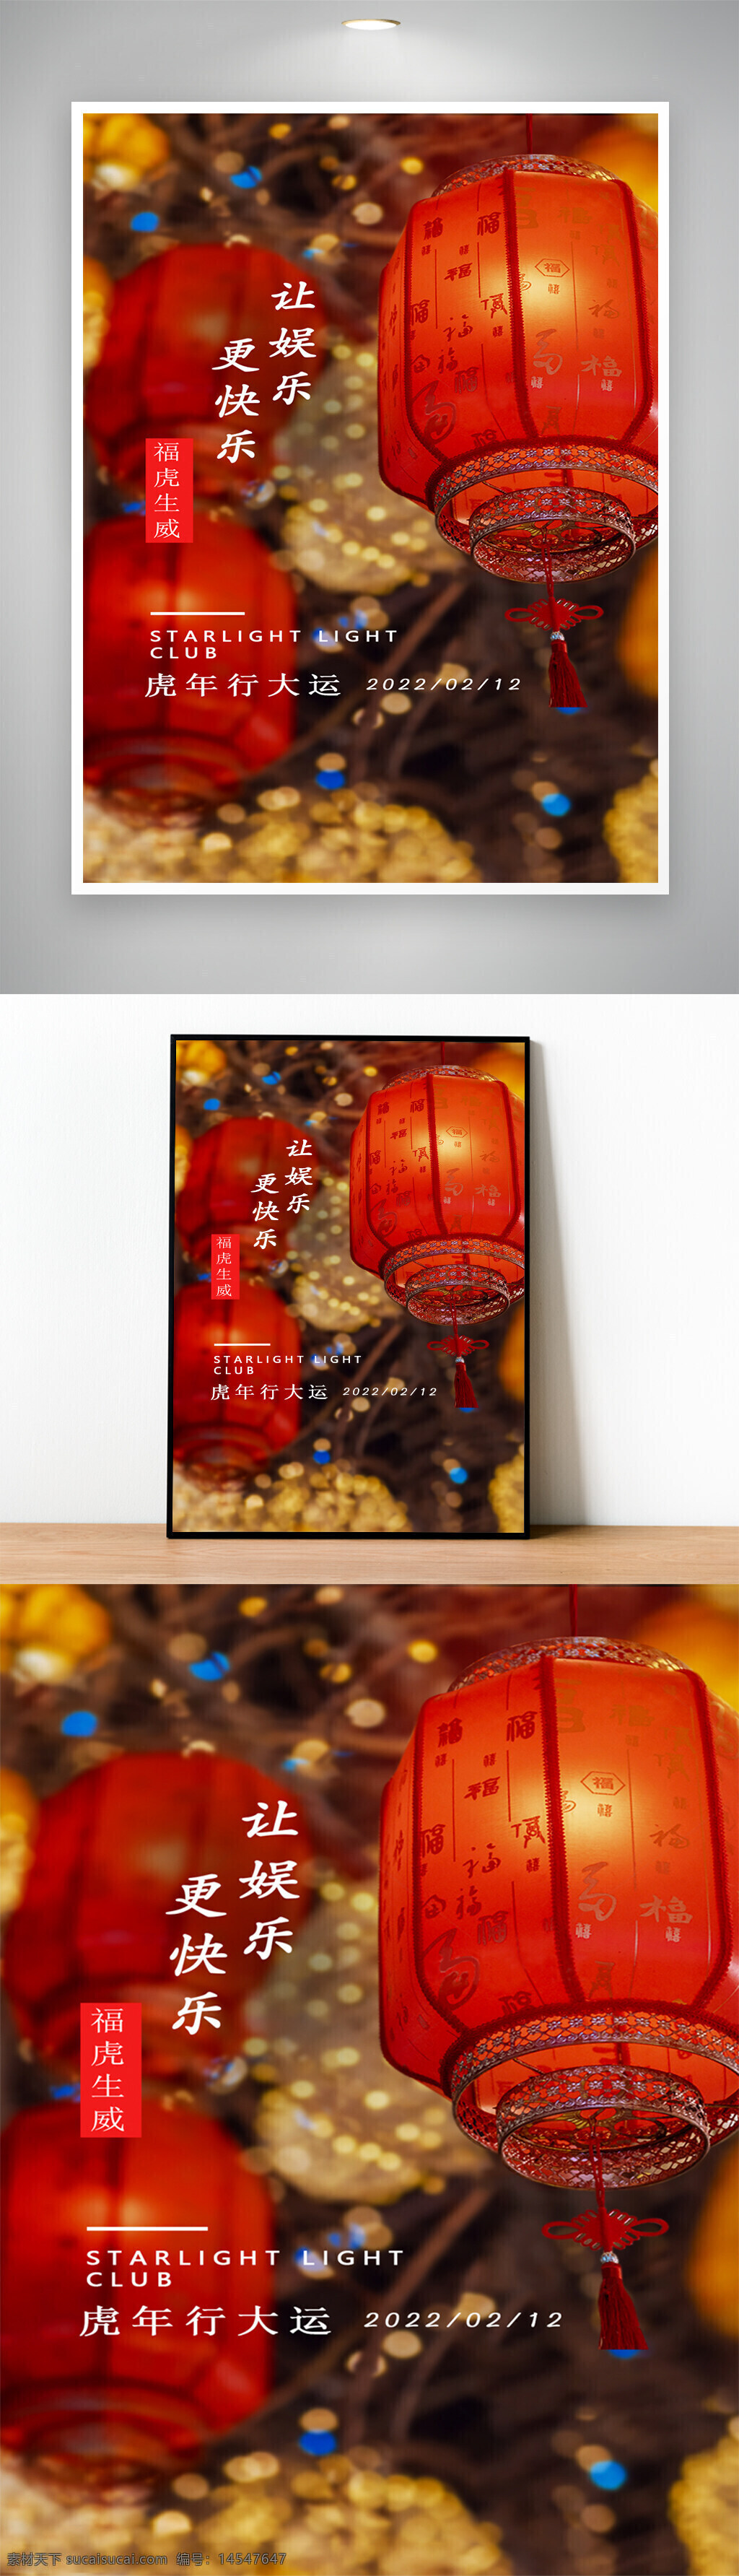 红色 喜庆 娱乐 海报设计 灯笼 春节 节日